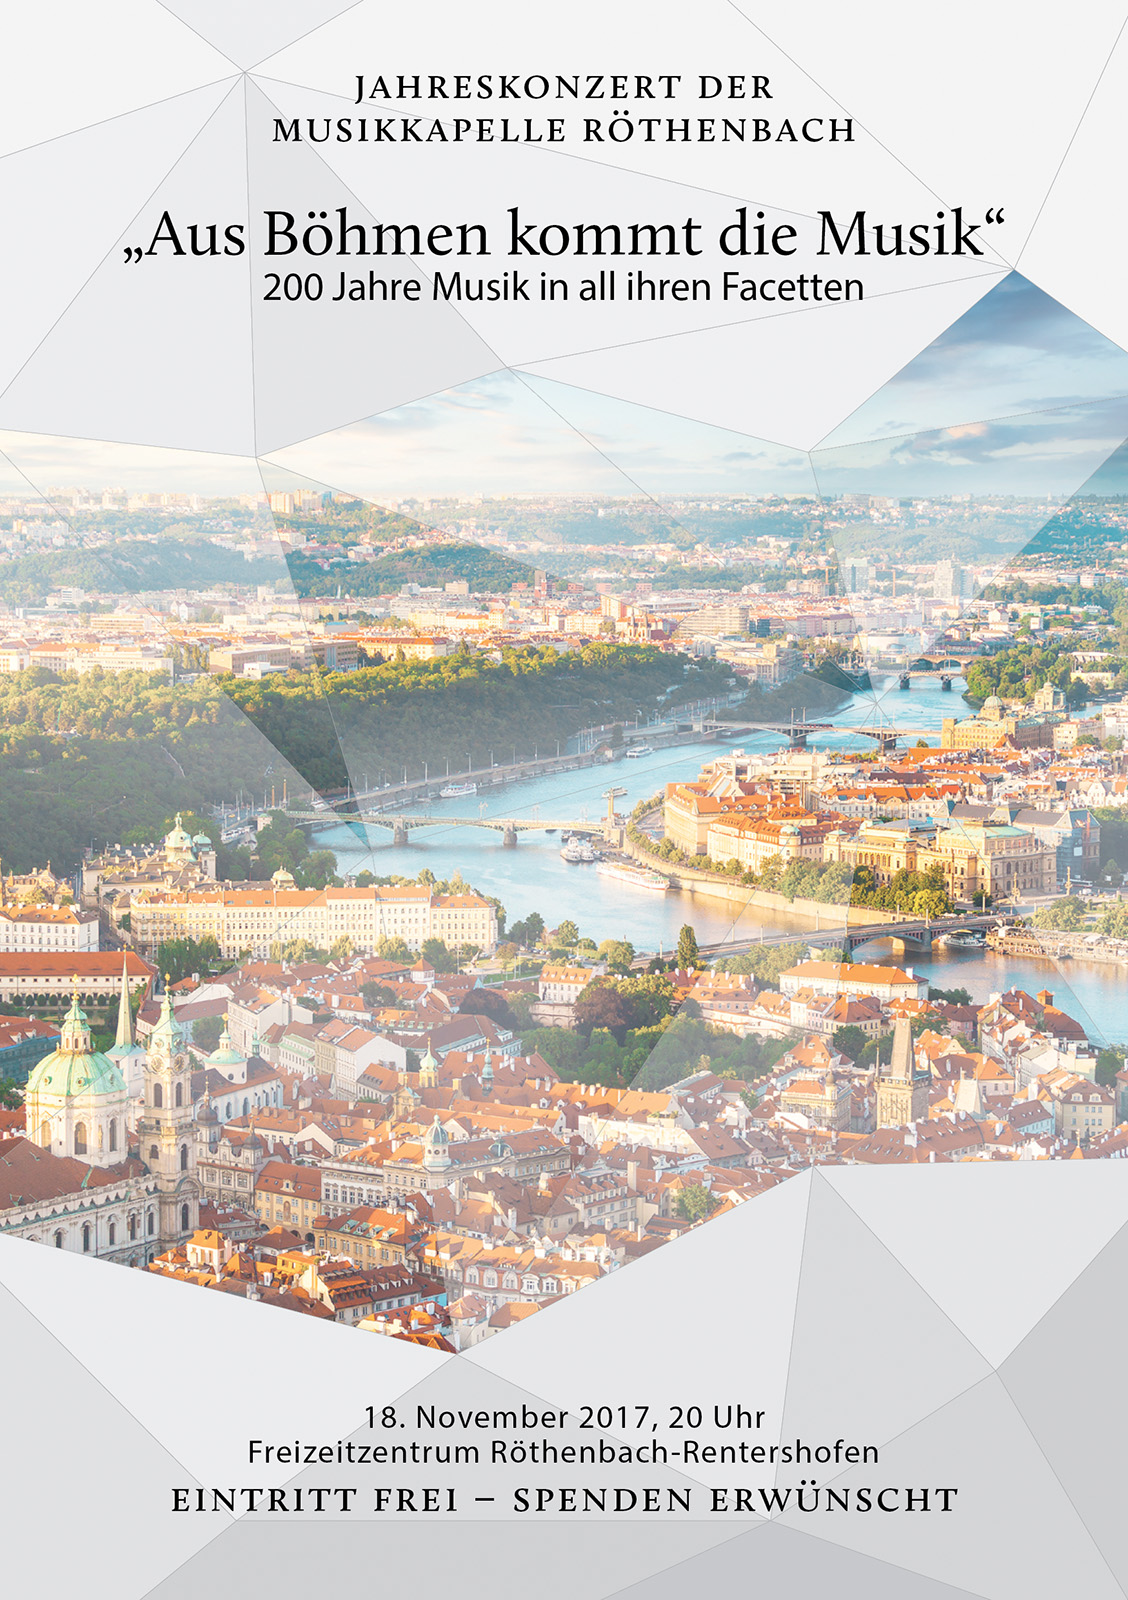 Jahreskonzert der Musikkapelle Röthenbach 2017 unter dem Motto "Aus Böhmen kommt die Musik" – 200 Jahre Musik in all ihren Facetten